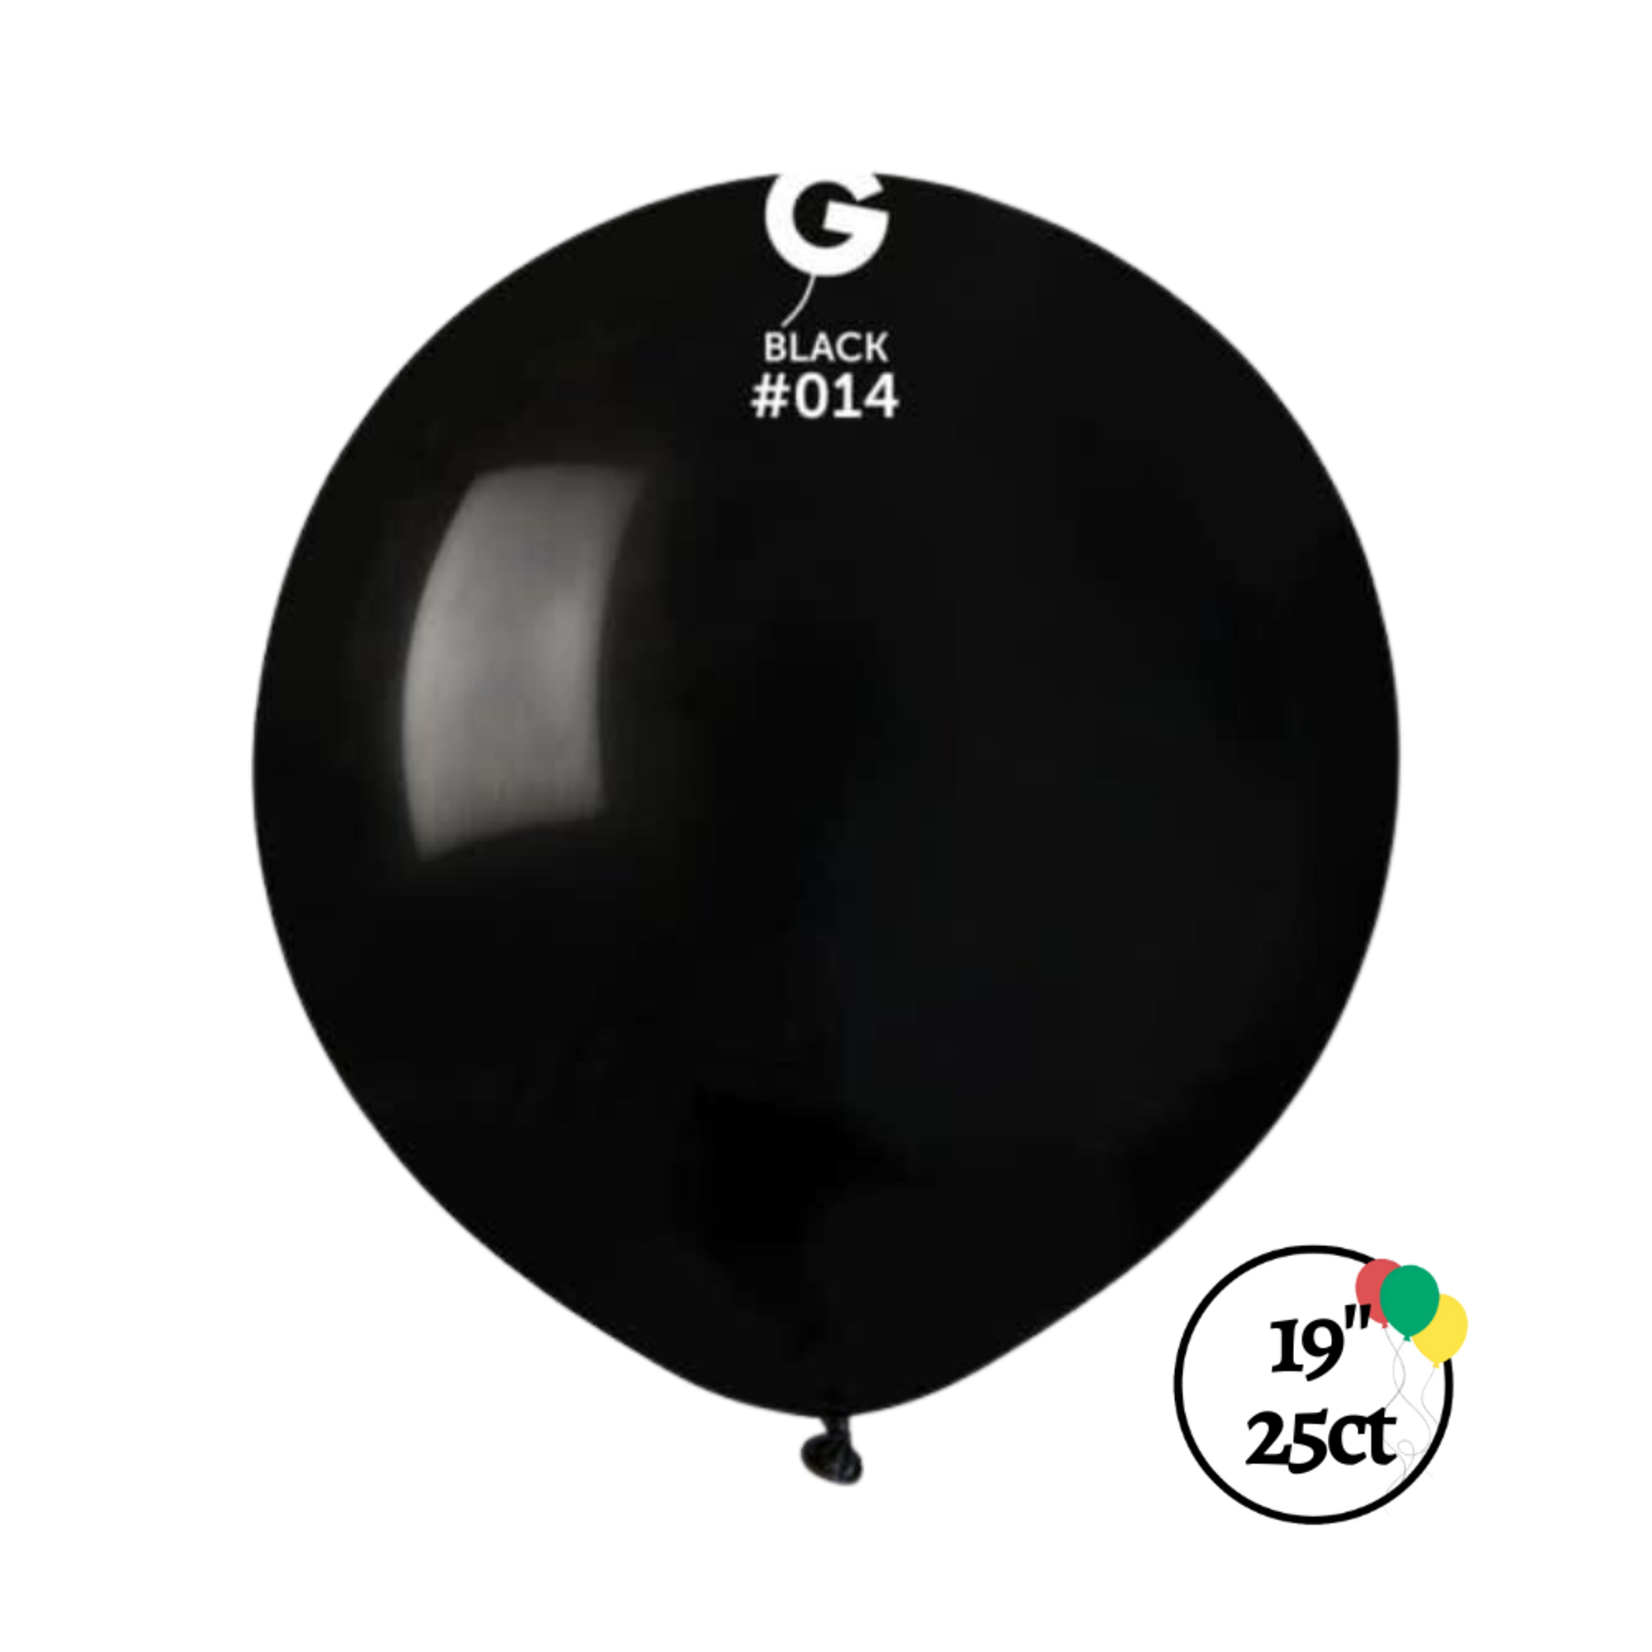 Gemar Gemar 19" Black 25ct Balloon